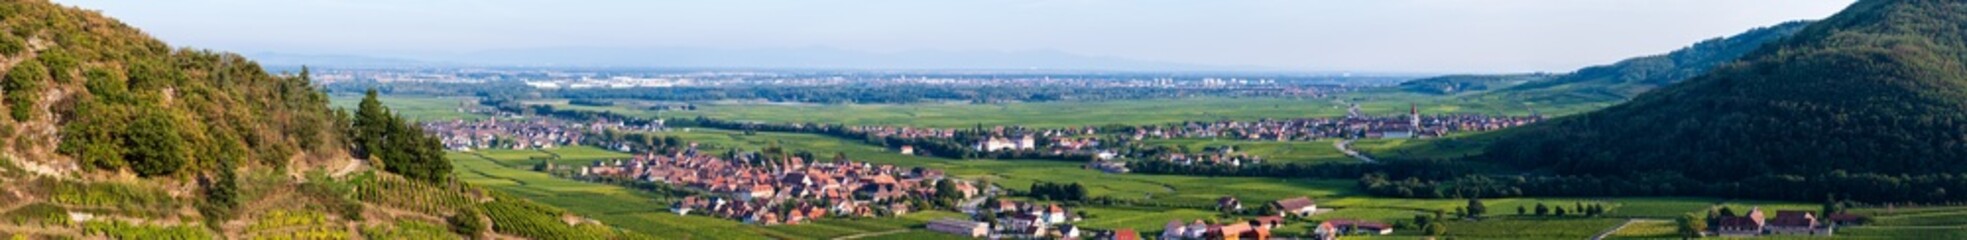 La plaine d'alsace et son vignoble observé depuis les hauteurs de Kaysersberg vignoble, CEA, Alsace, Grand Est, France